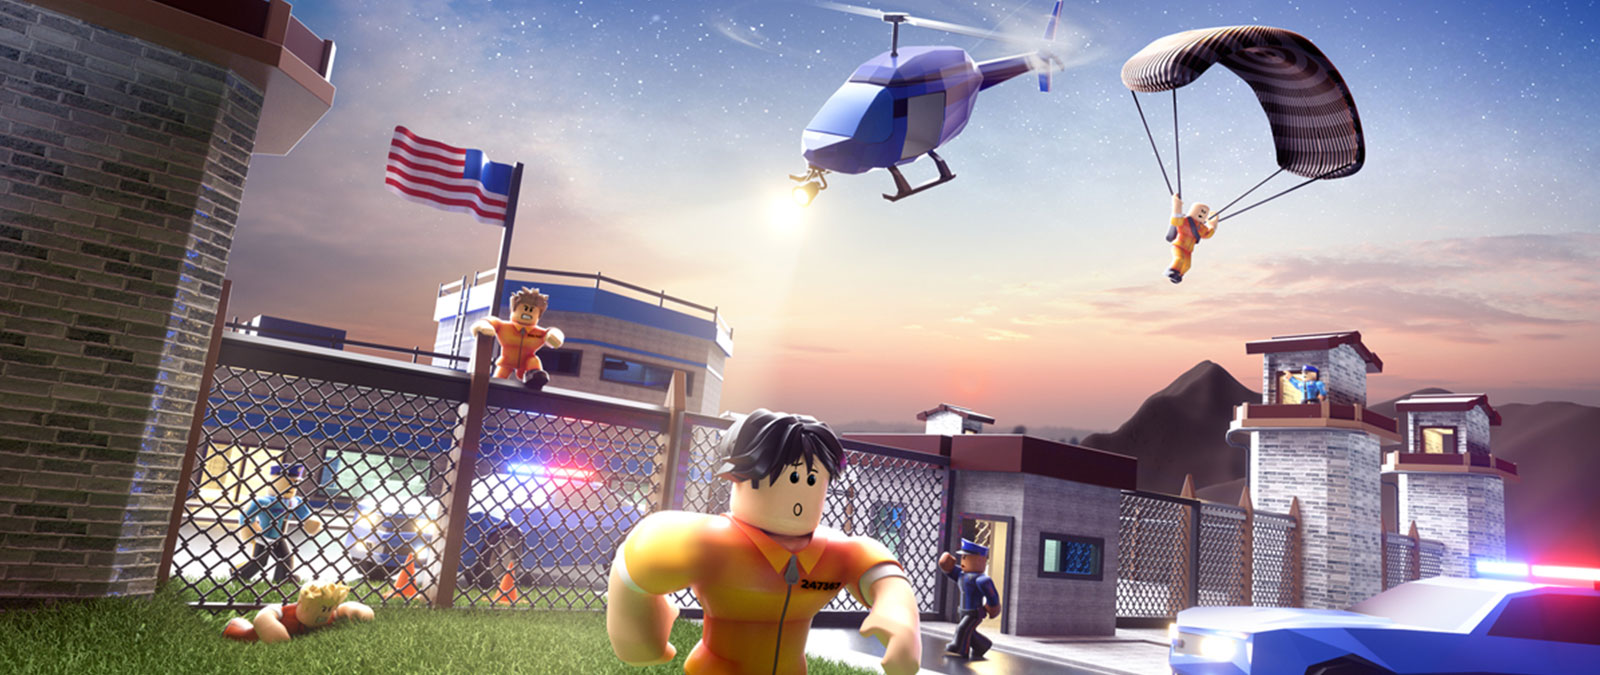 Jailbreak 게임에서 경찰이 그들을 뒤쫓는 동안 감옥에서 탈출하는 Roblox 캐릭터